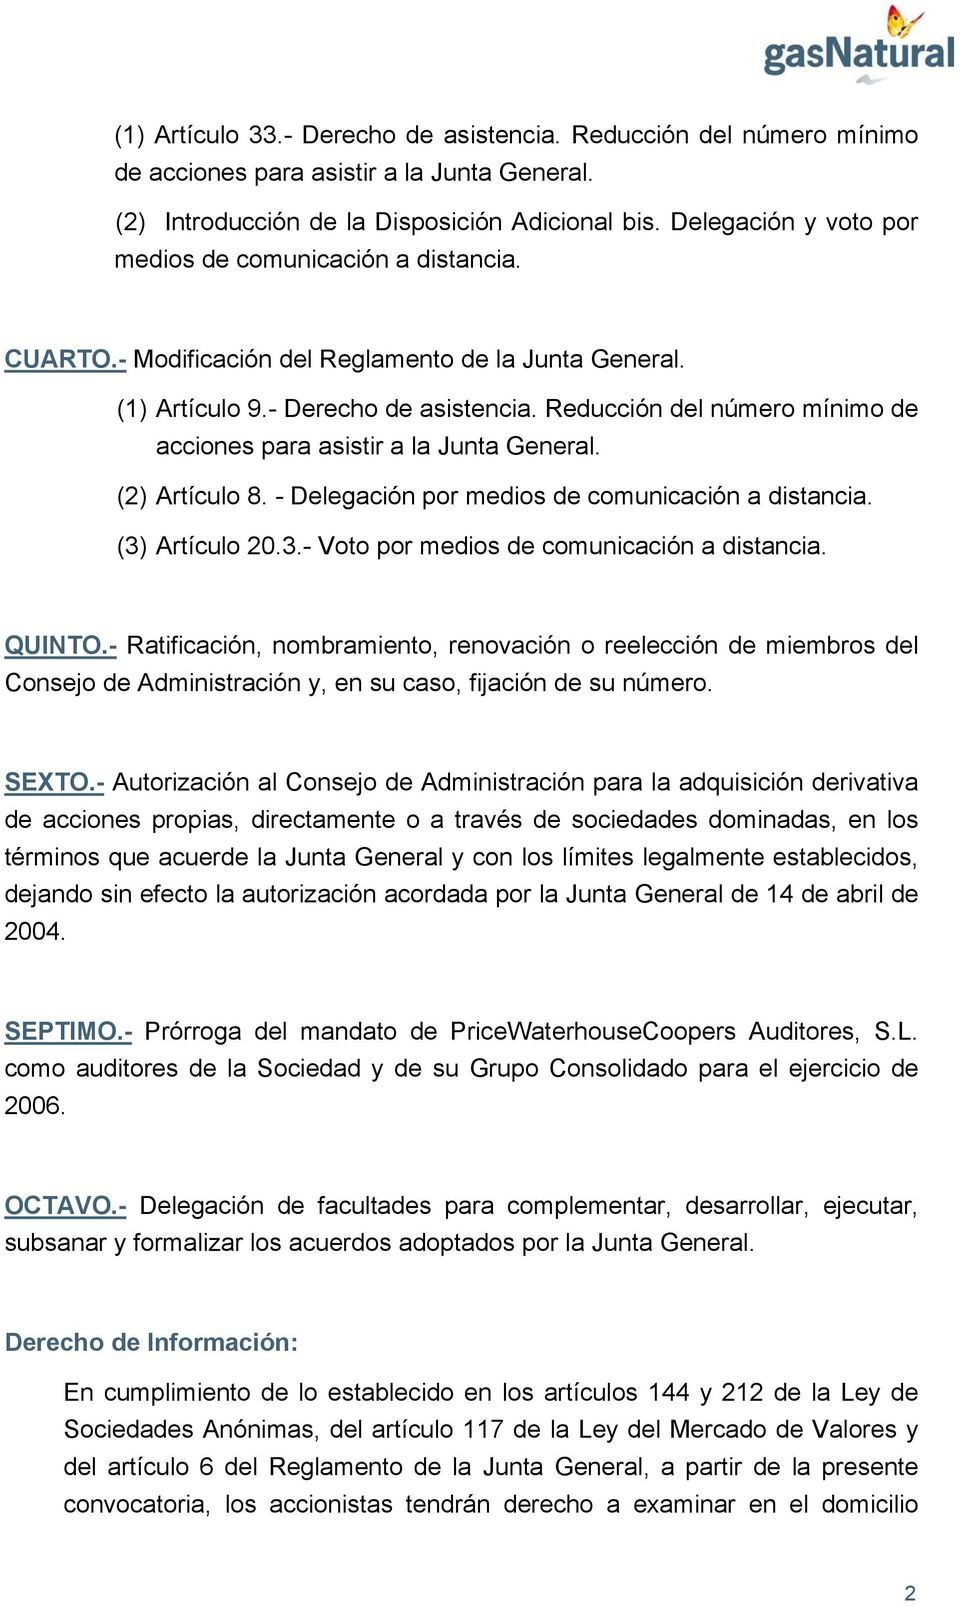 Reducción del número mínimo de acciones para asistir a la Junta General. (2) Artículo 8. - Delegación por medios de comunicación a distancia. (3) Artículo 20.3.- Voto por medios de comunicación a distancia.